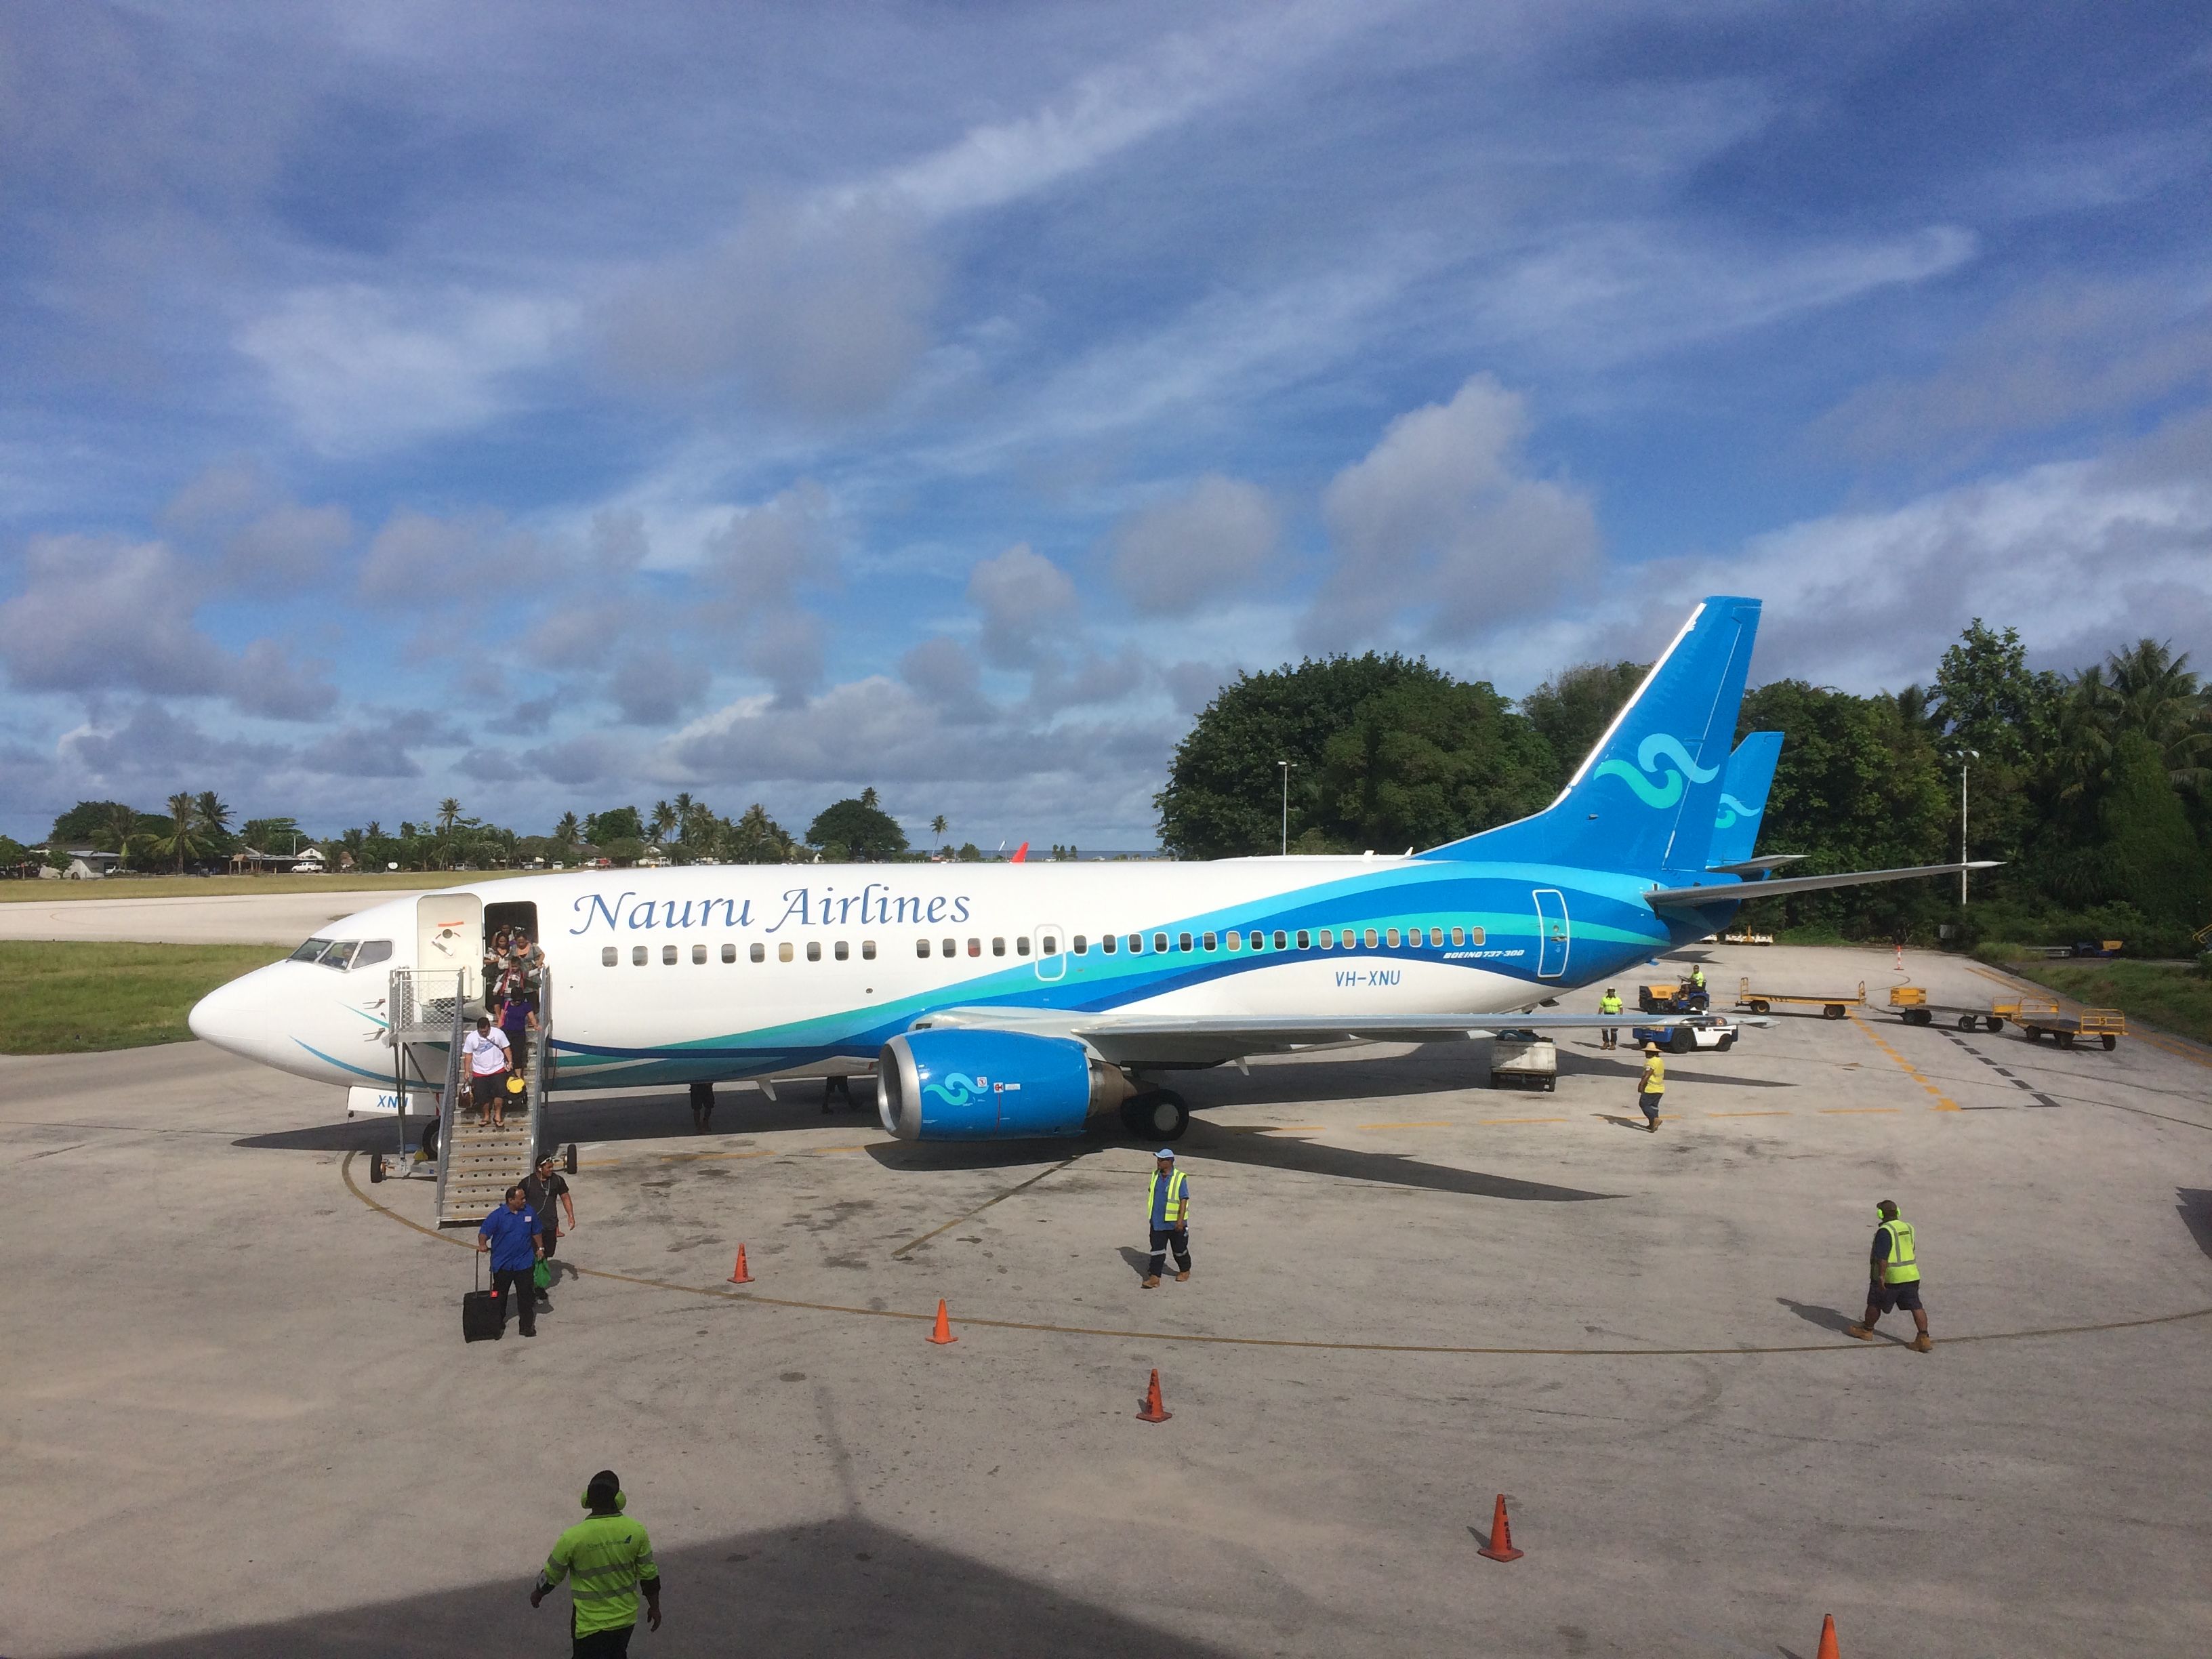 Nauru_Airlines_Boeing_737-300_(VH-XNU)_at_Nauru_International_Airport